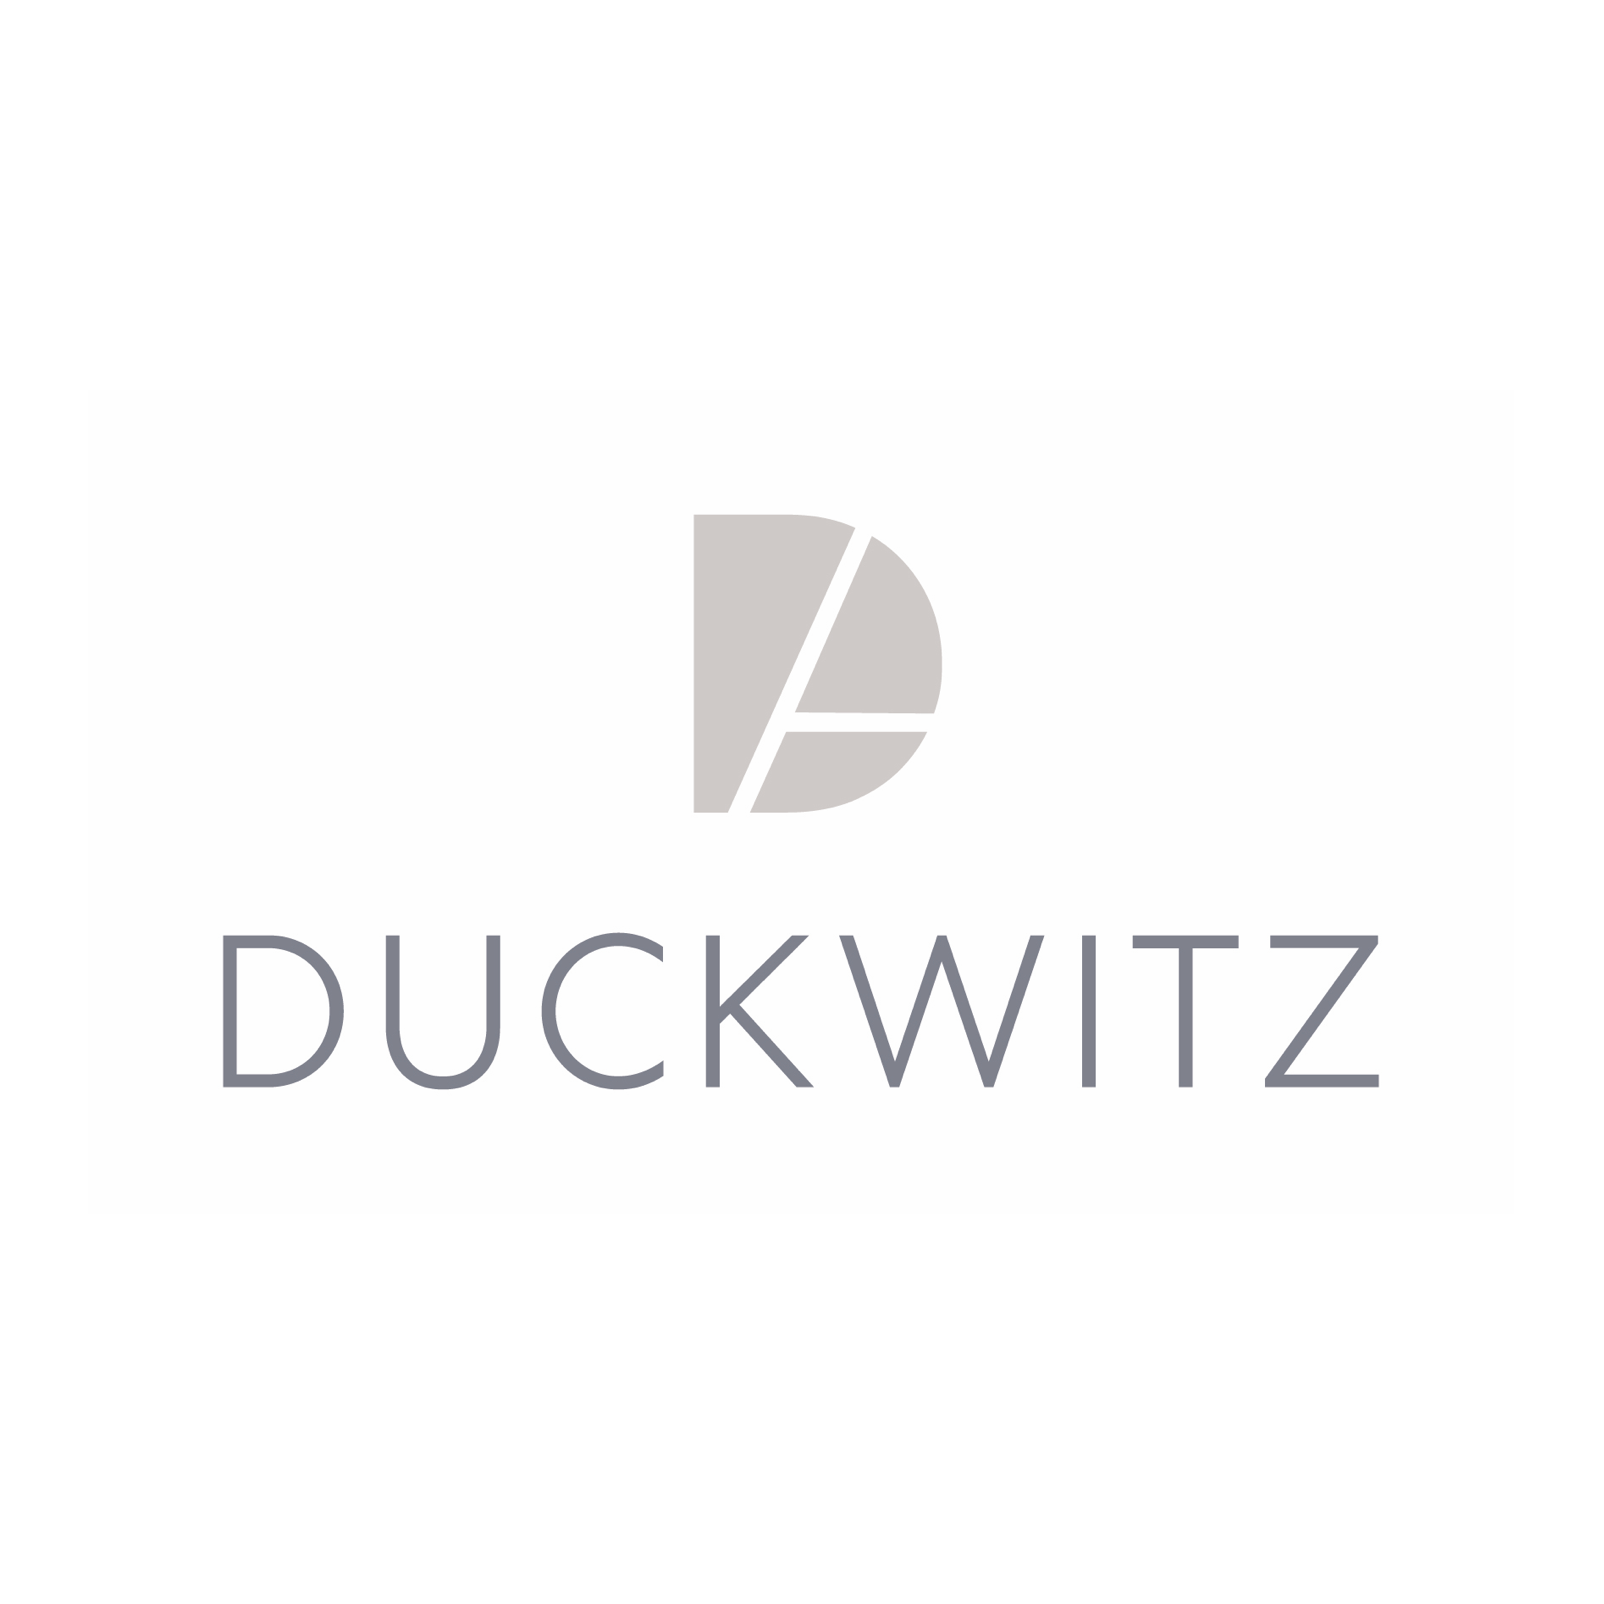 Maximilian Duckwitz – Zahnarzt in Zuffenhausen in Stuttgart - Logo